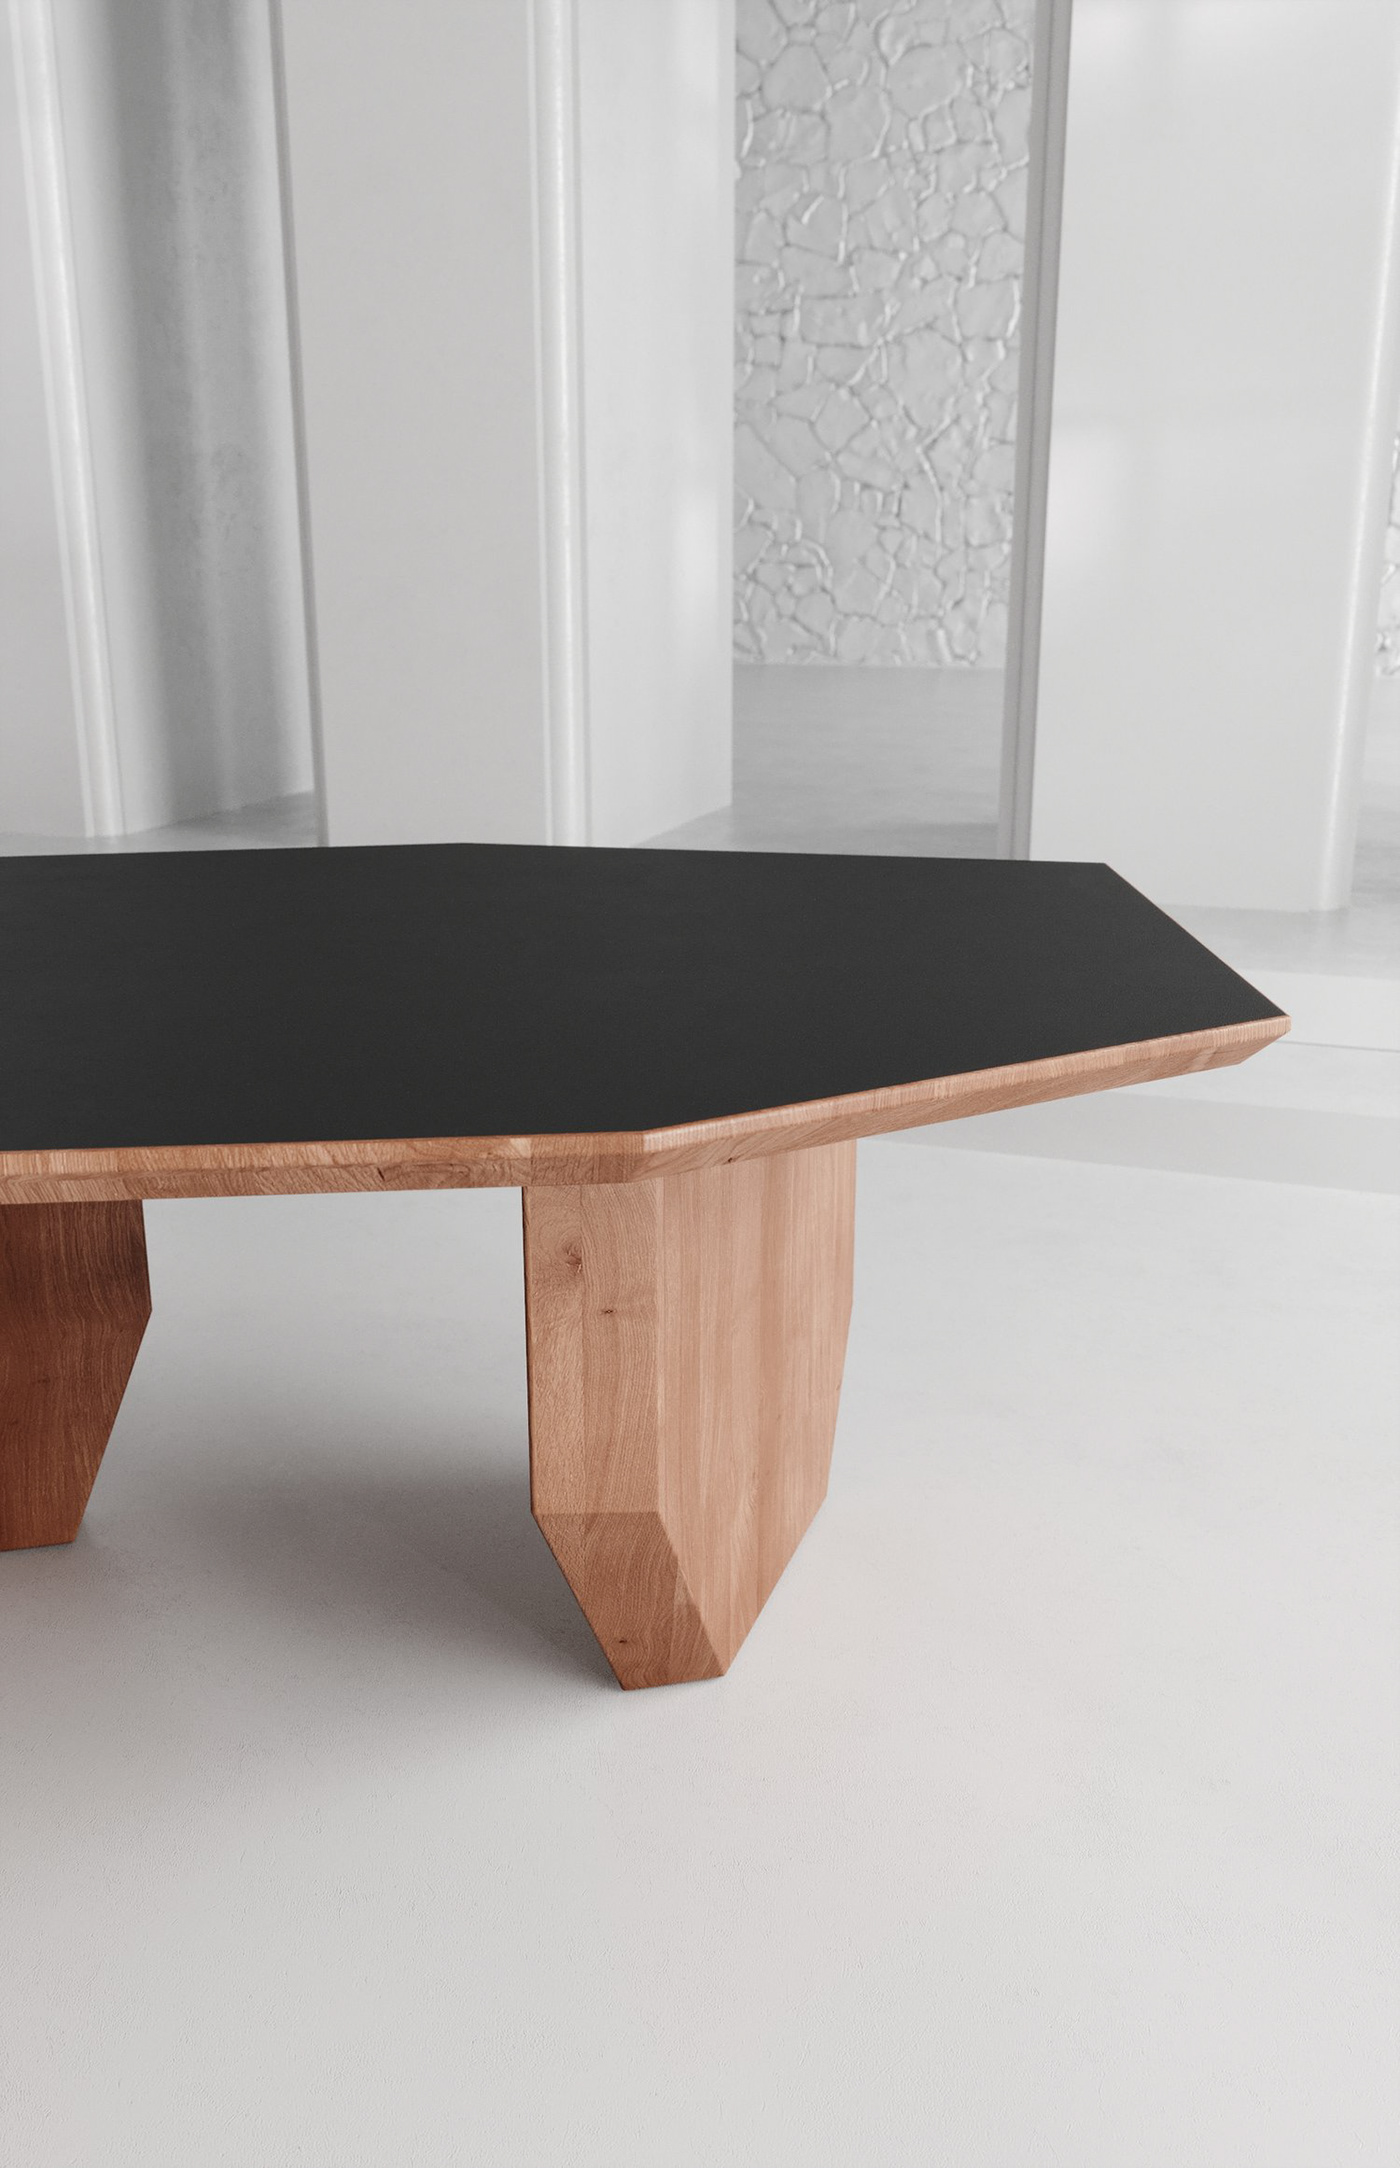 design furniture furnituredesign Interior interiordesign stool table wood